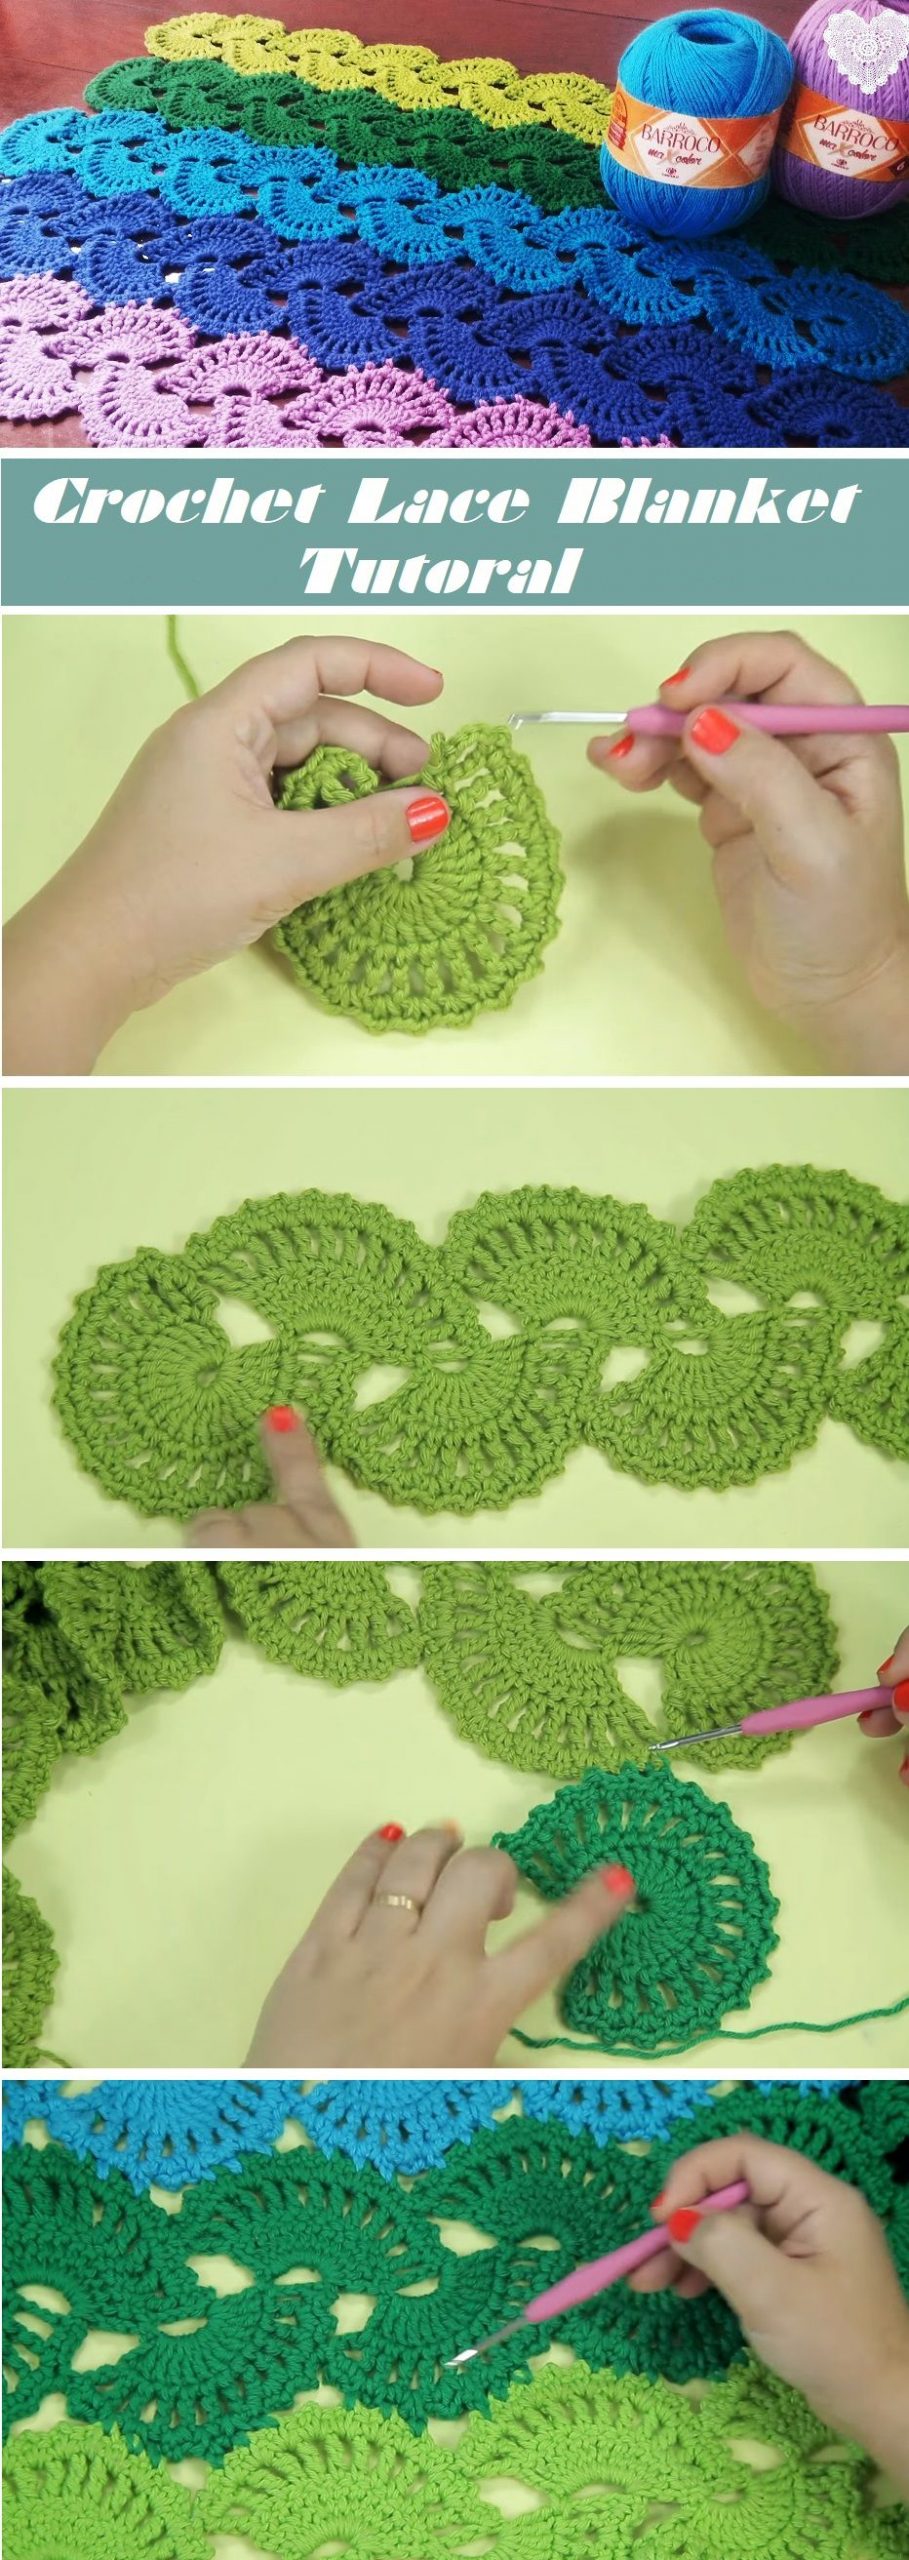 Crochet-Lace-Blanket-–-Tutorial.jpg